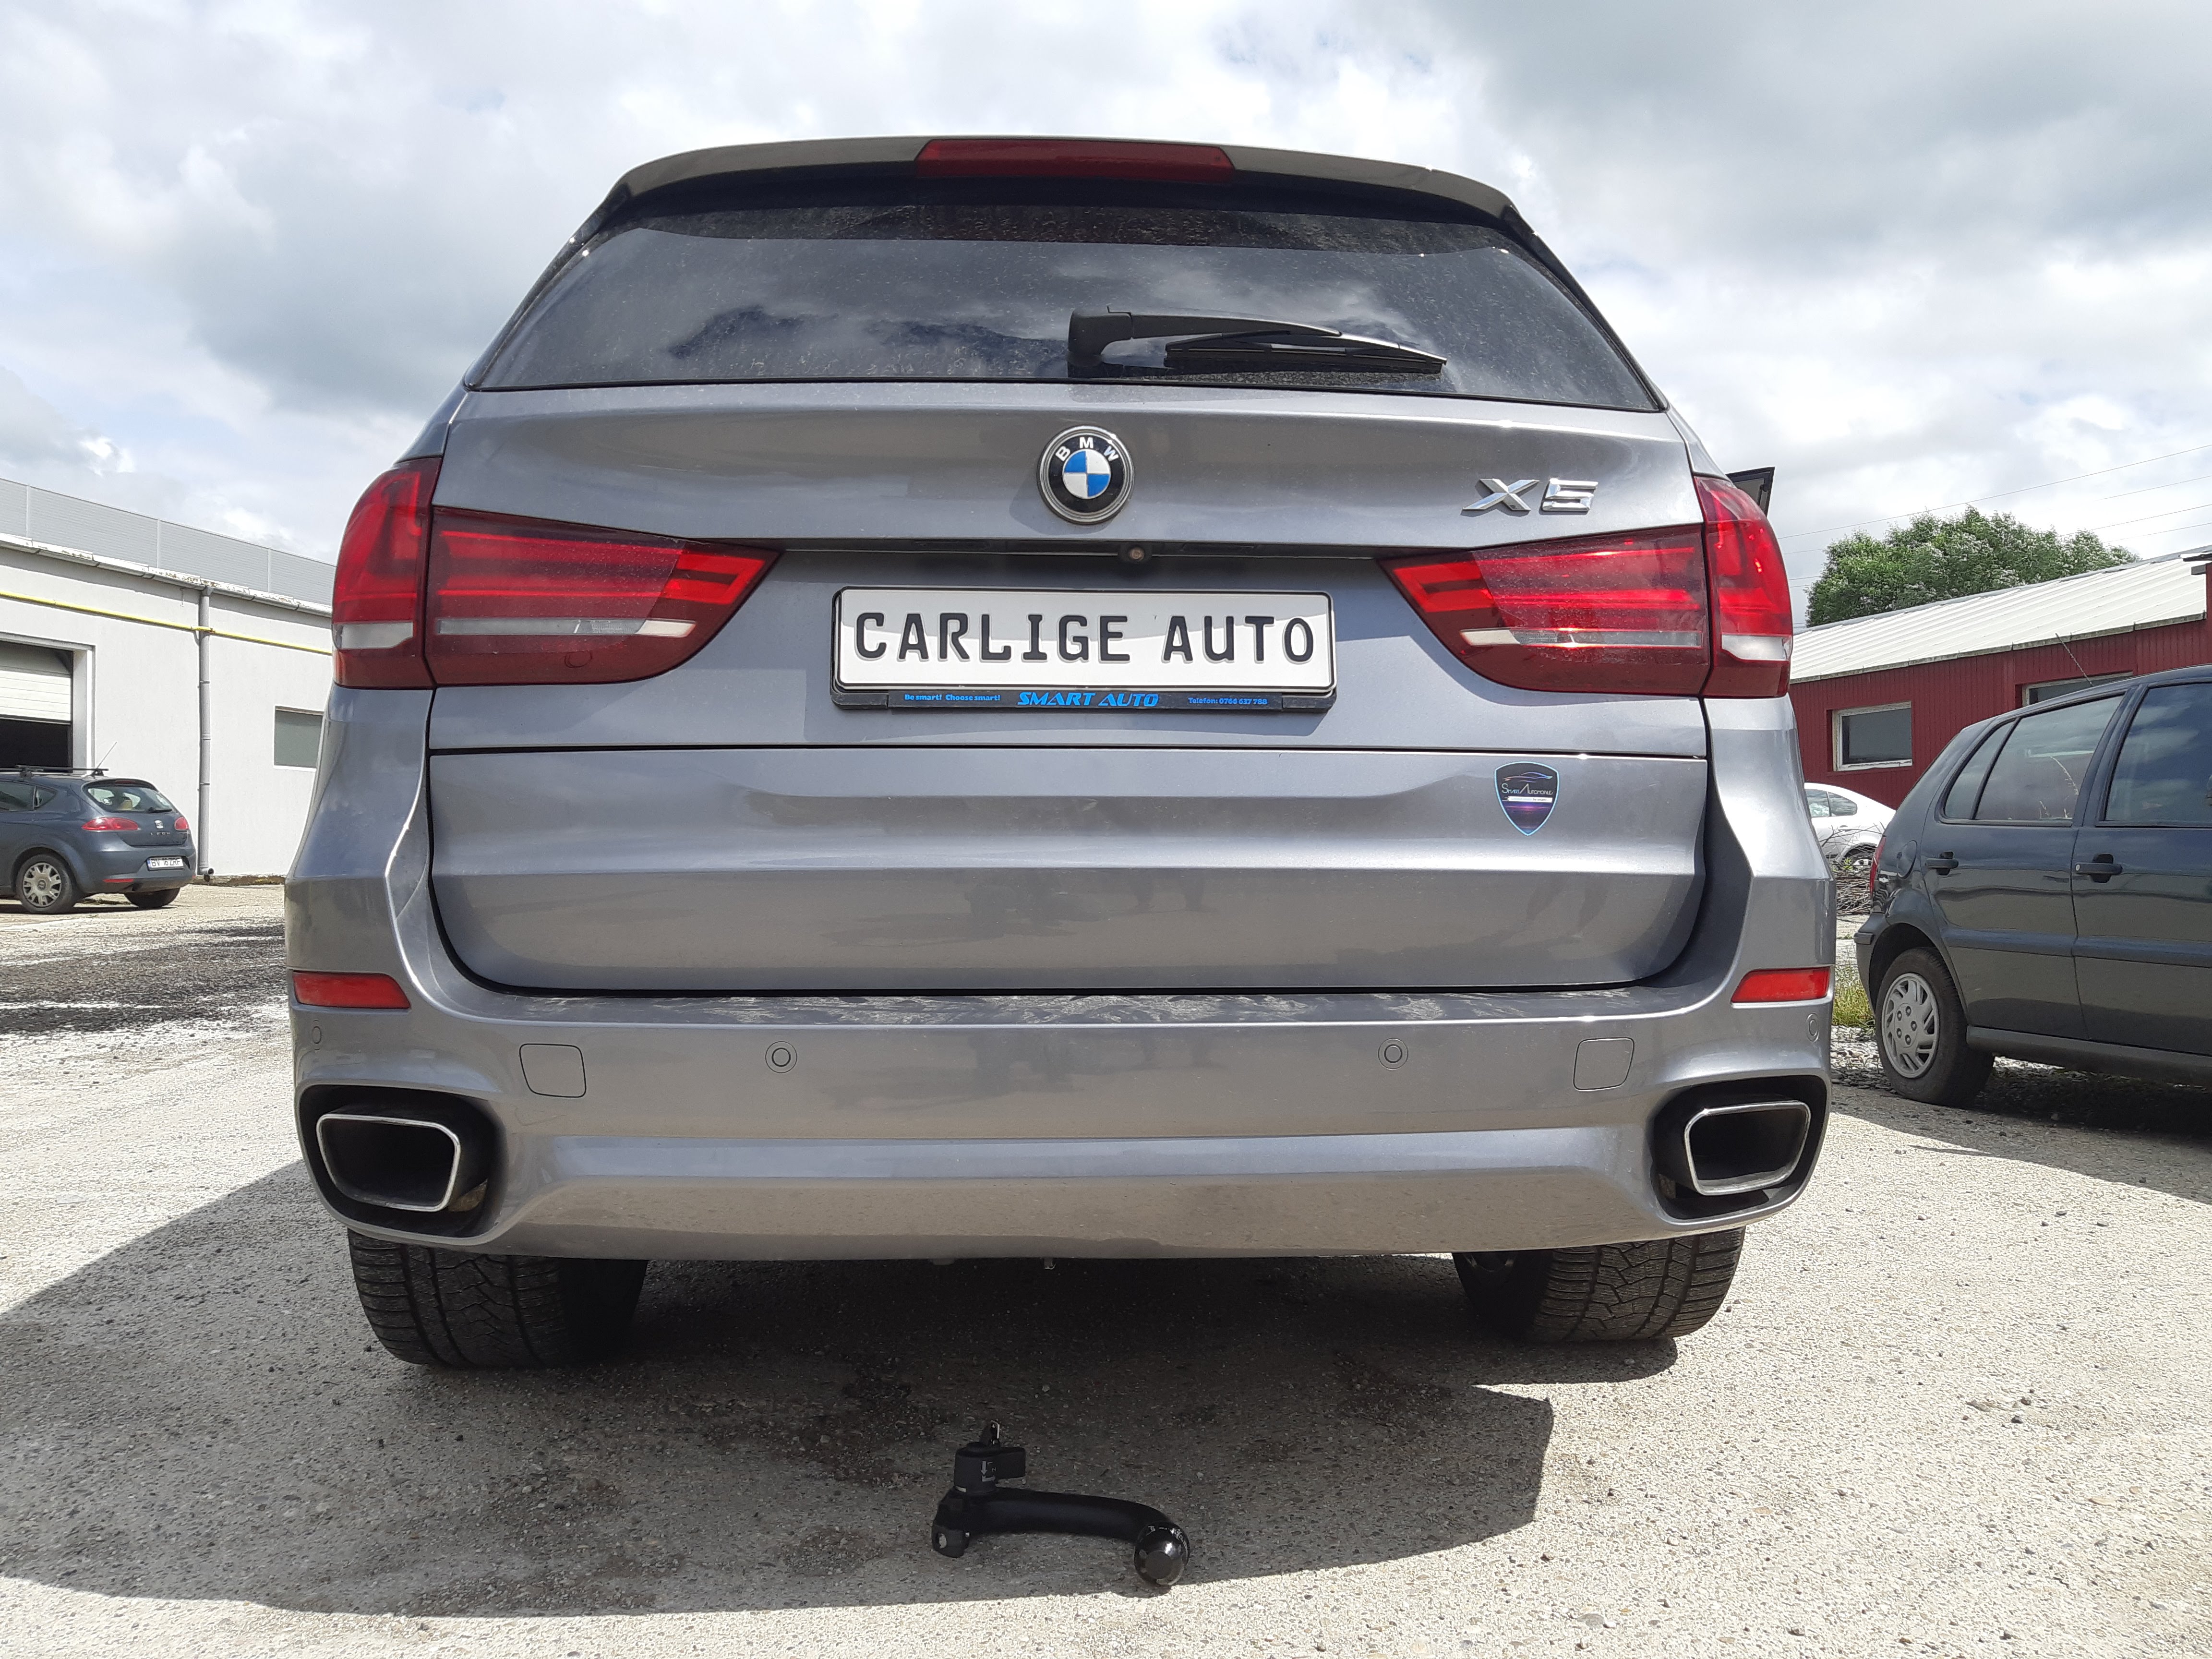 Carlig remorcare BMW X5 F15 SUV